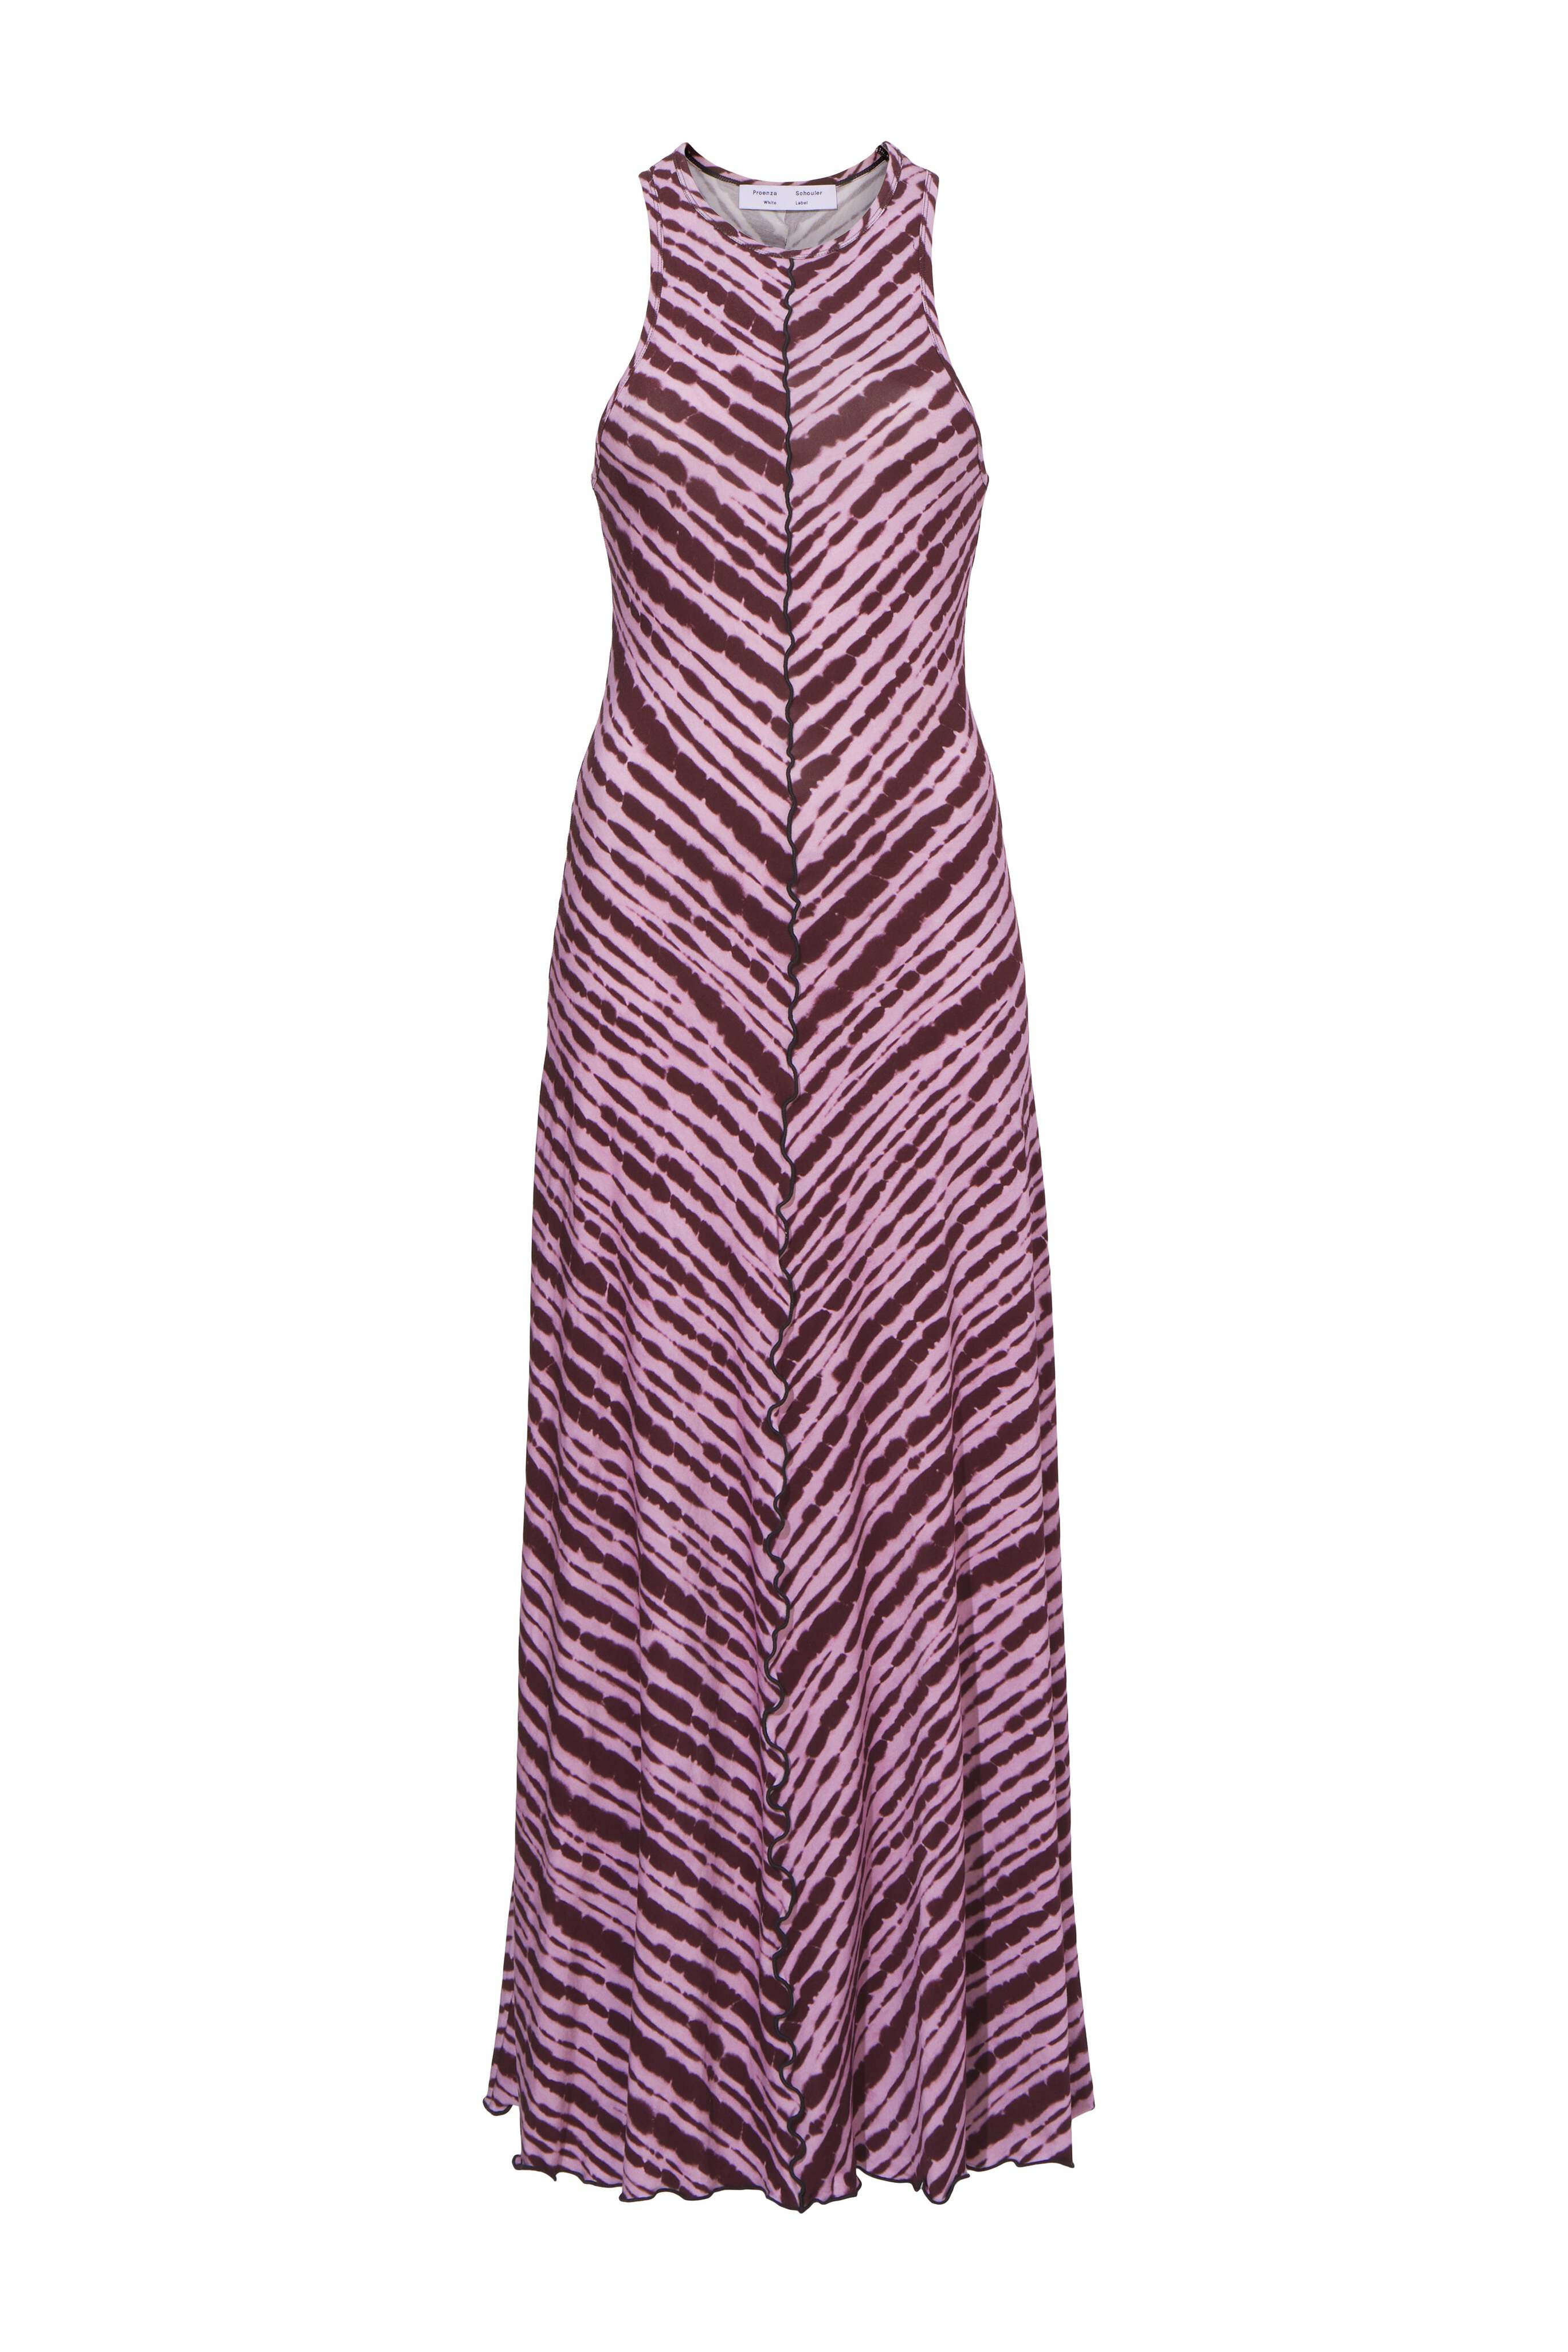 Tie-Dye Dress